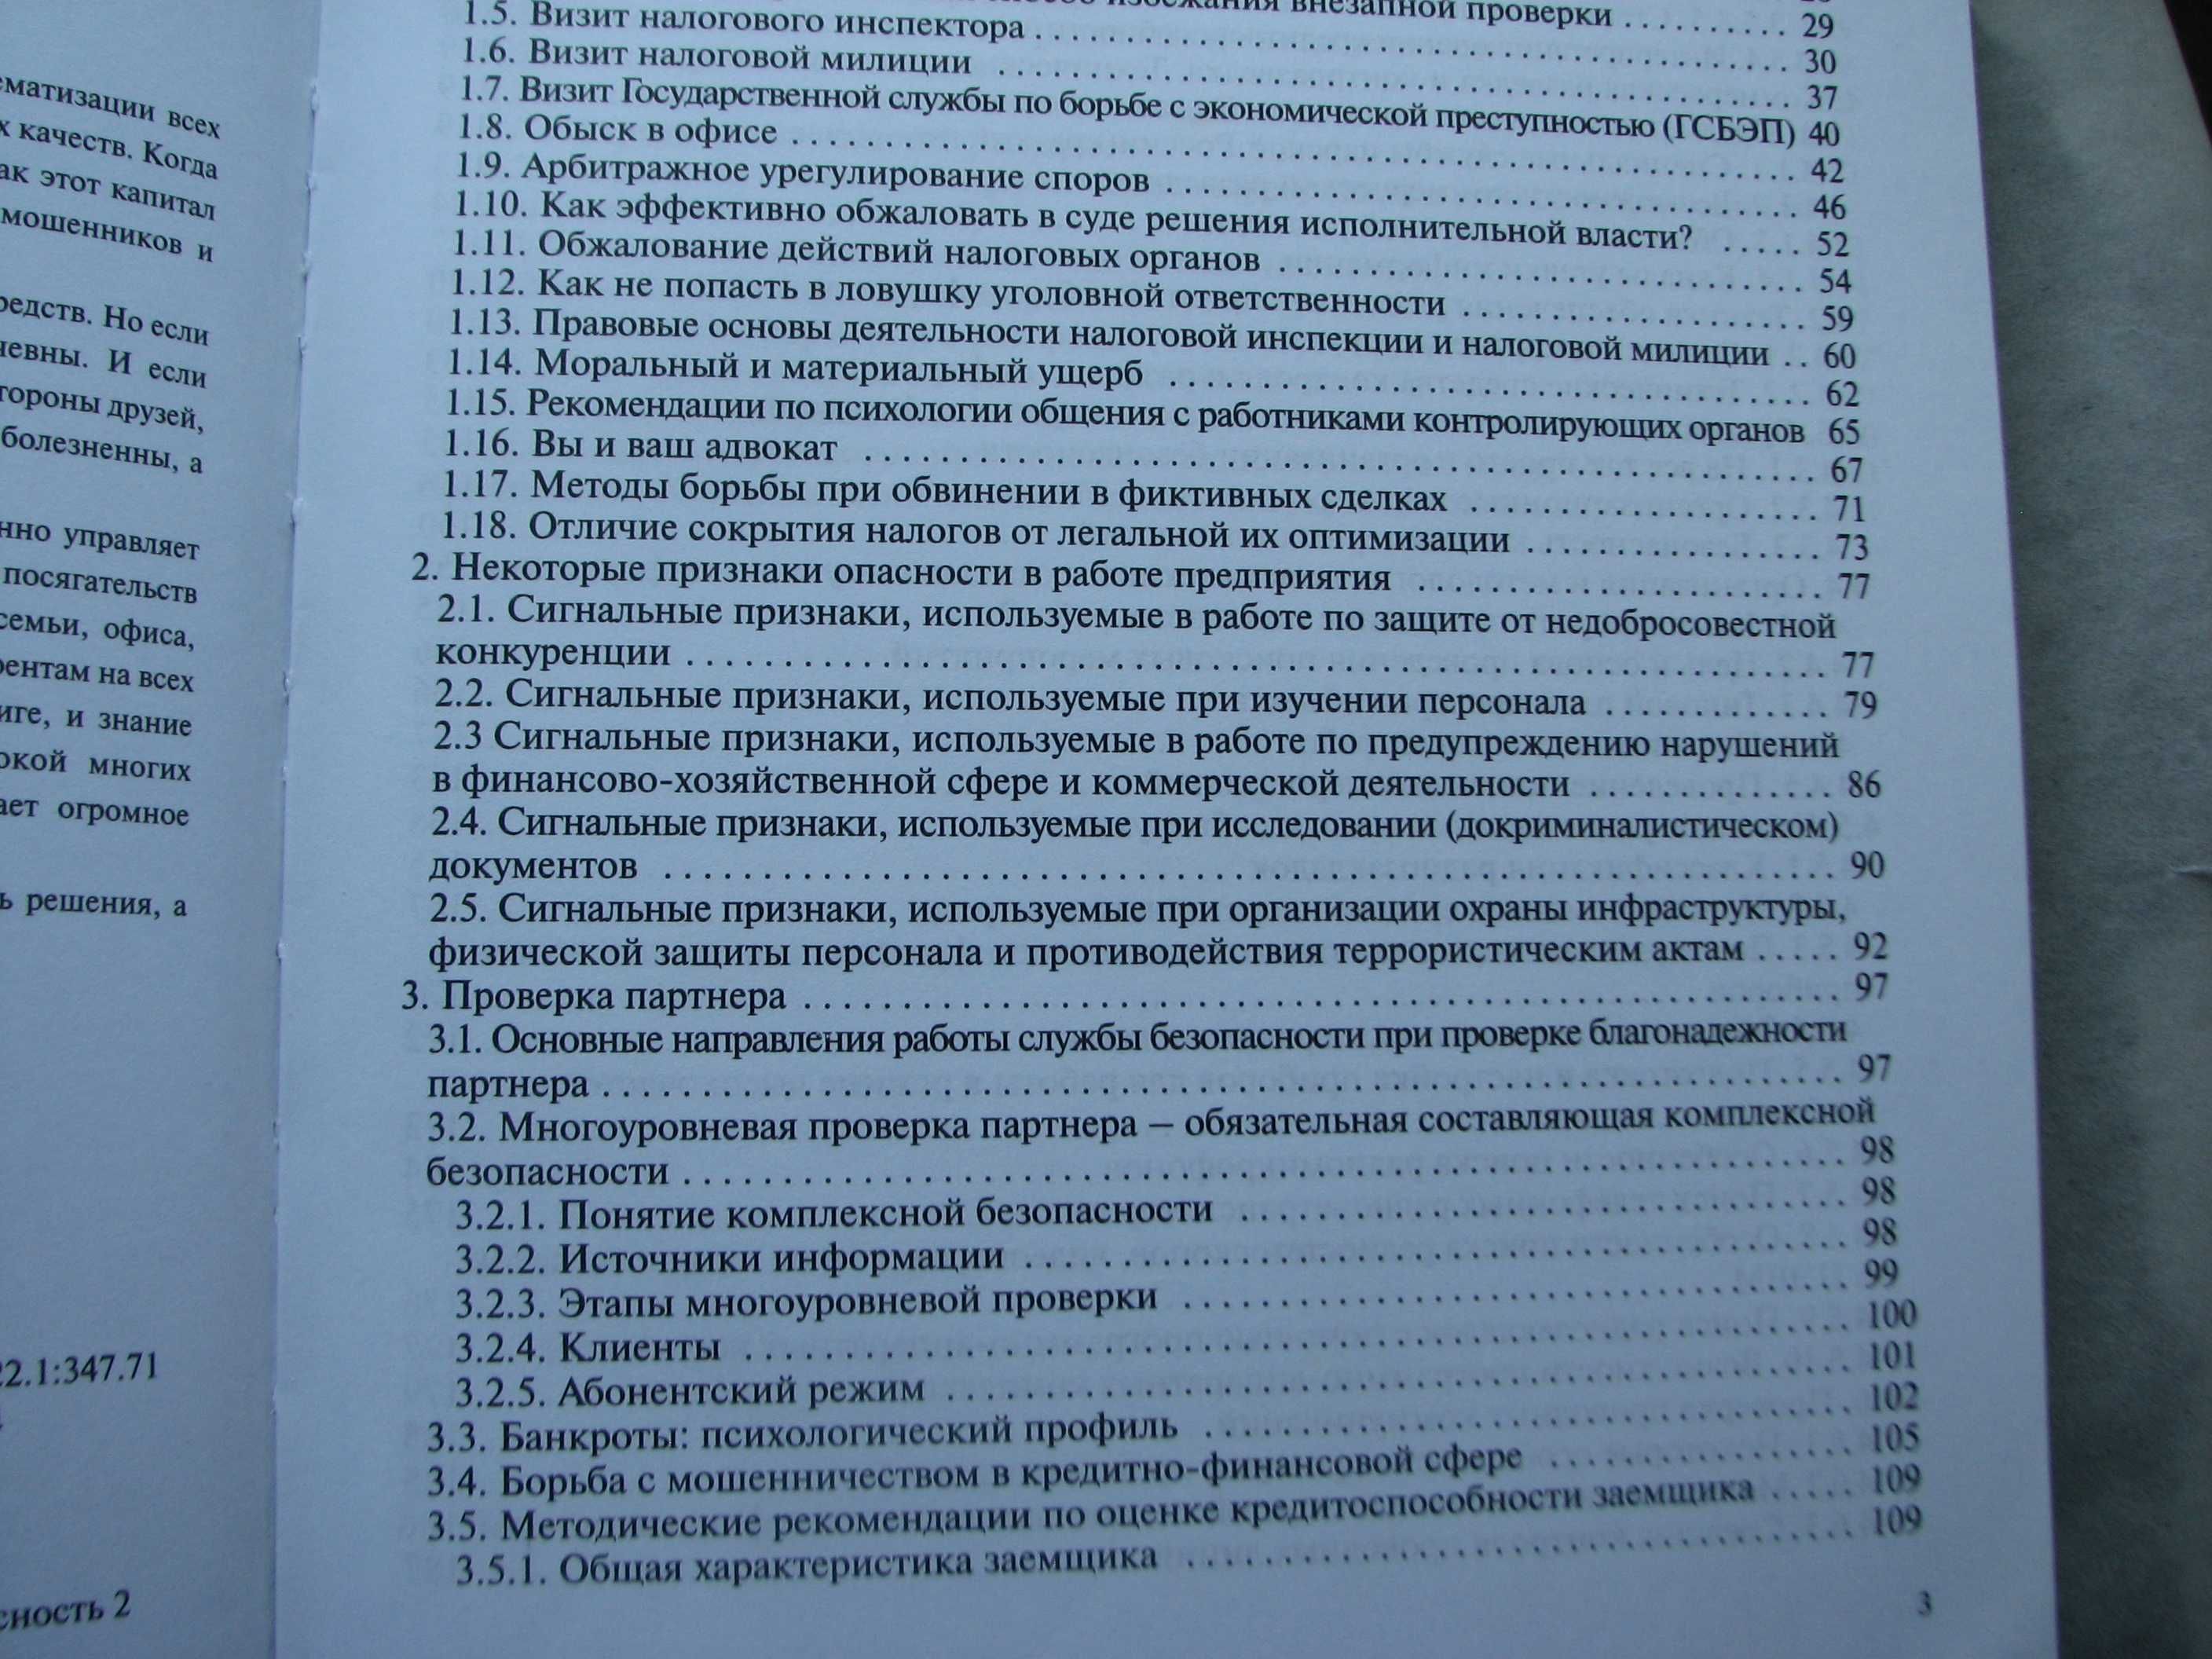 Книга  Бурышев В.С.  "Концепции безопасности", том 1, 2